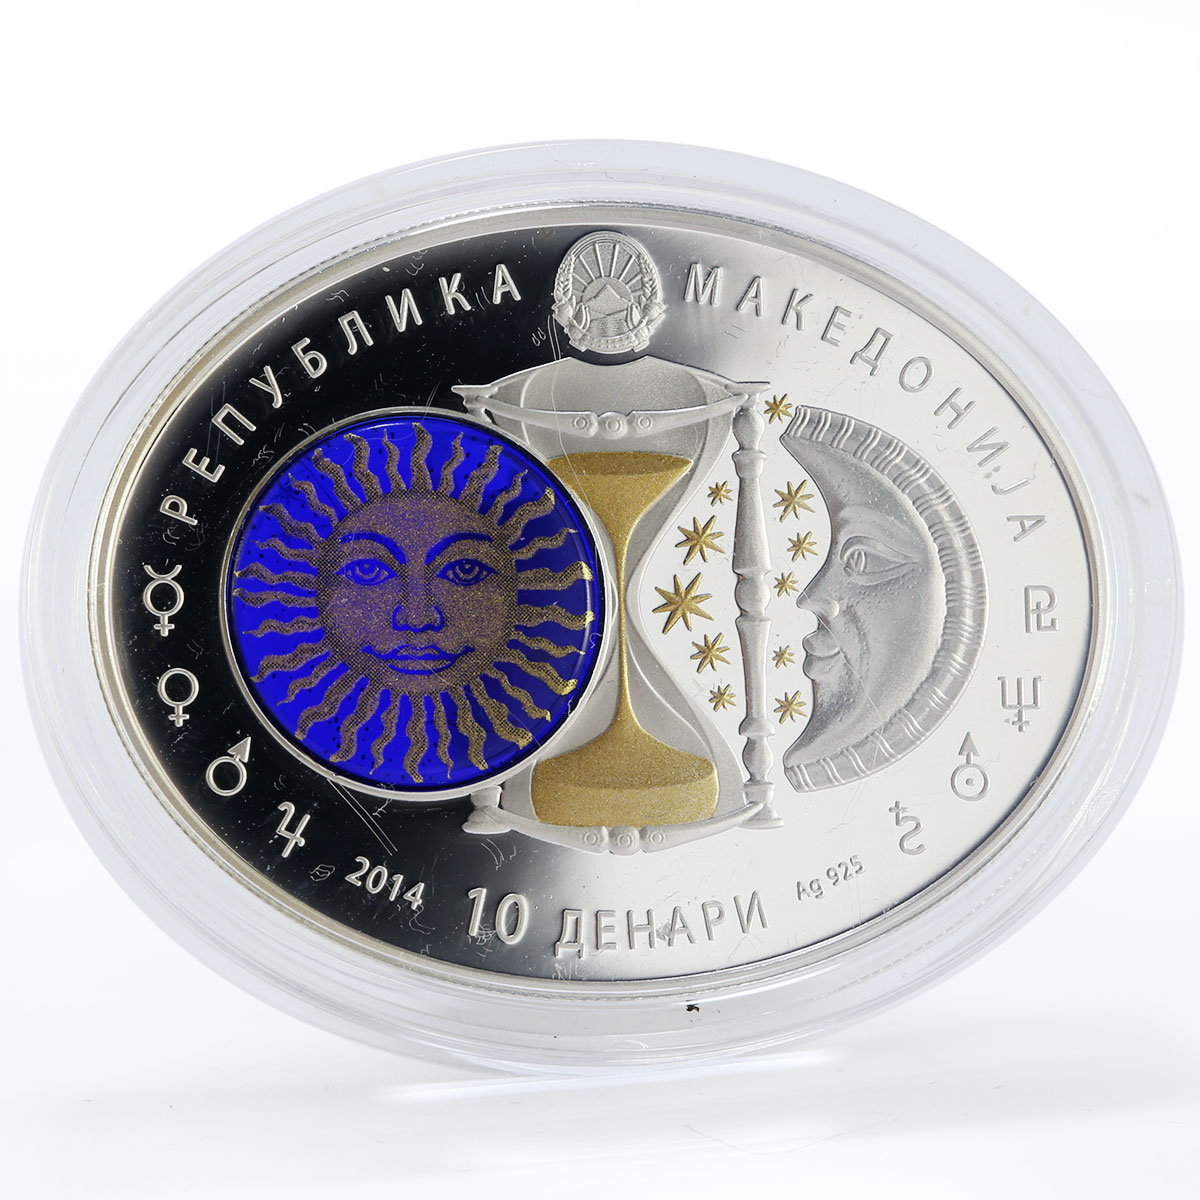 Macedonia 10 denari Zodiac Scorpio 3D printing Gilded Silver Oval Coin 2014